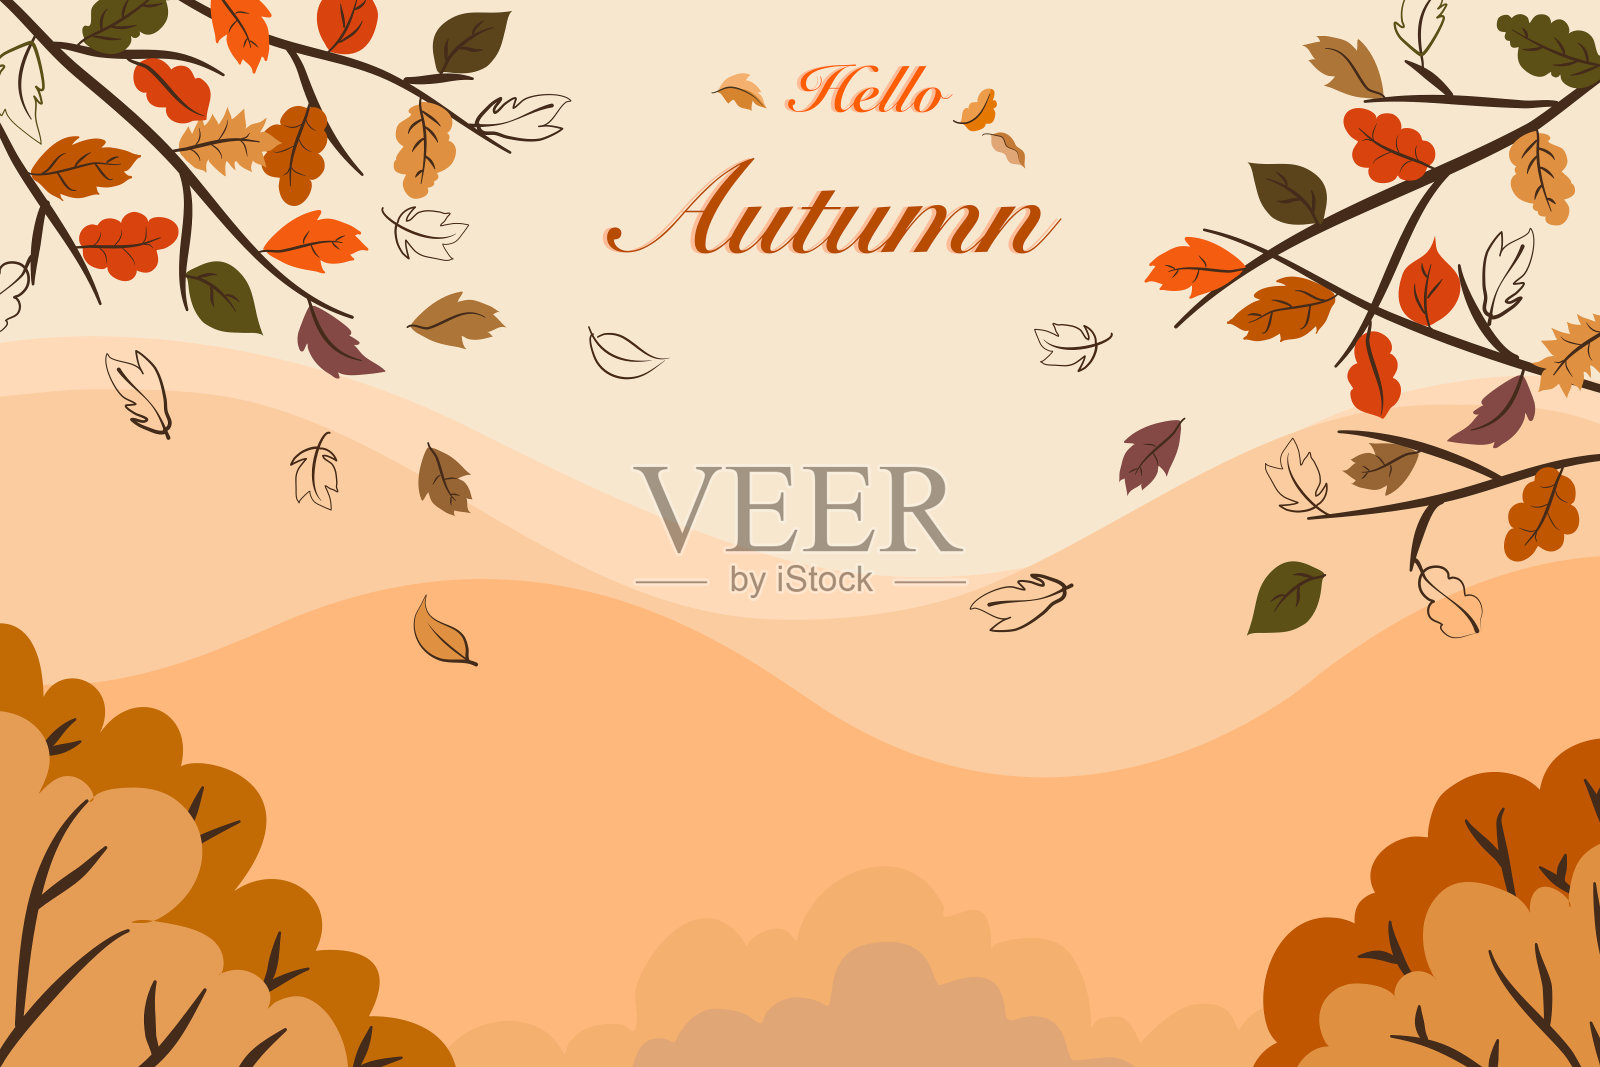 矢量秋天的季节视图绘图，景观的橙色和棕色的树叶，树木，森林山上的风景与你好，秋天的文字为假期明信片，邀请背景插画图片素材